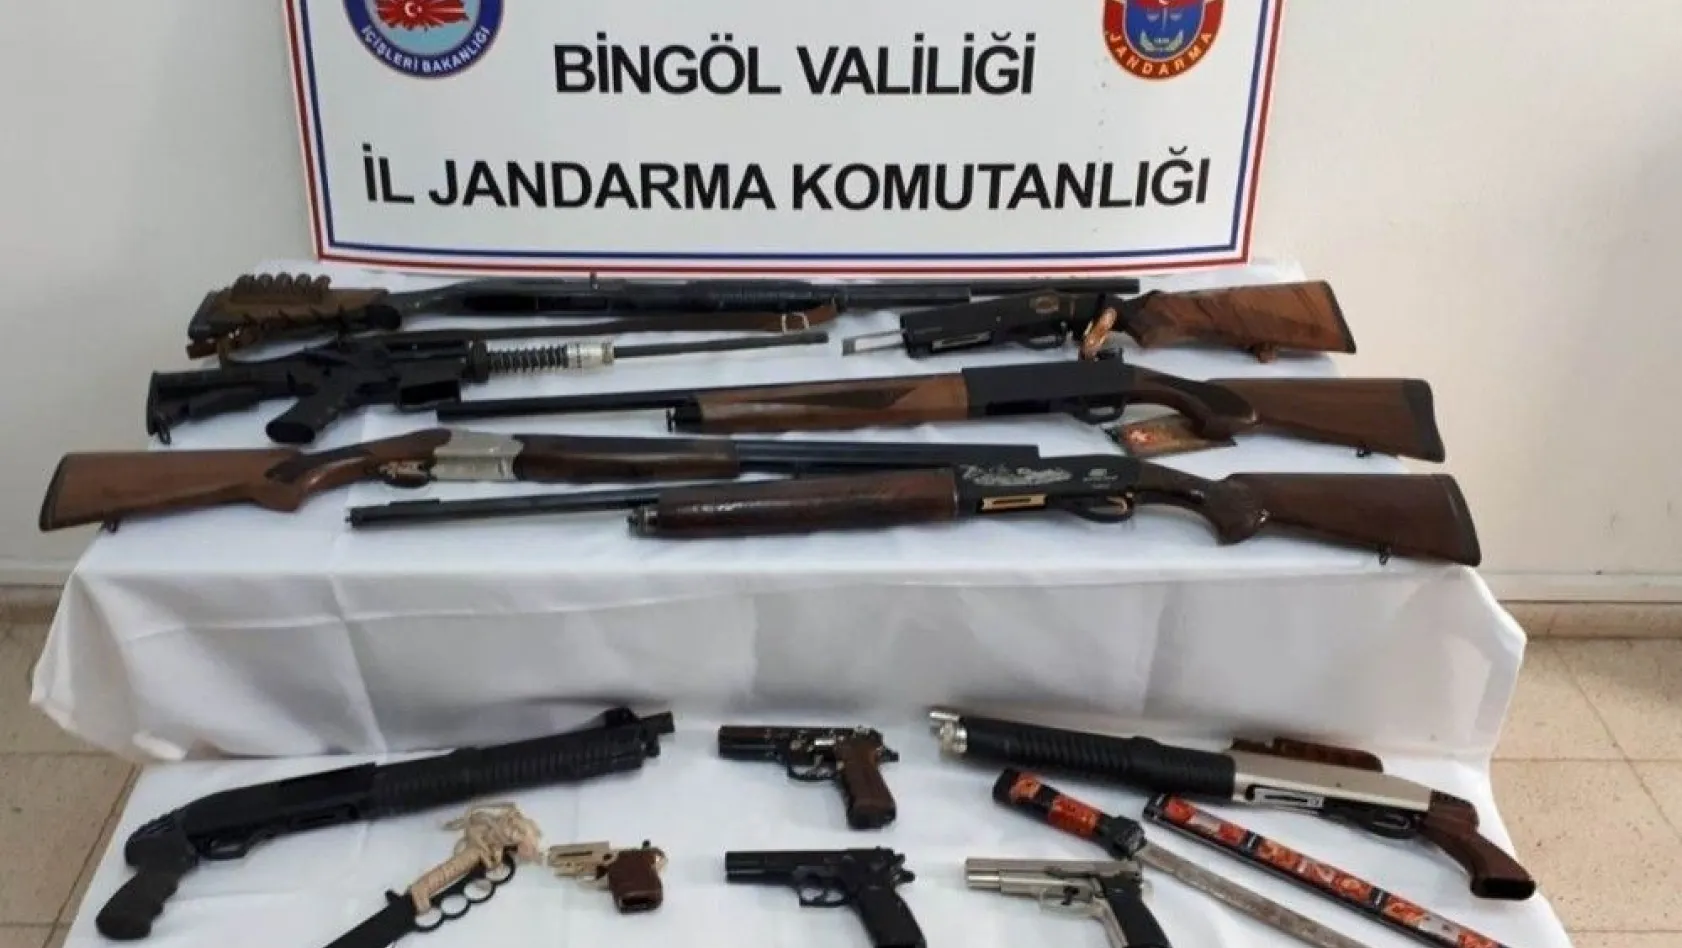 Bingöl'de silah kaçakçılarına operasyon: 11 gözaltı
